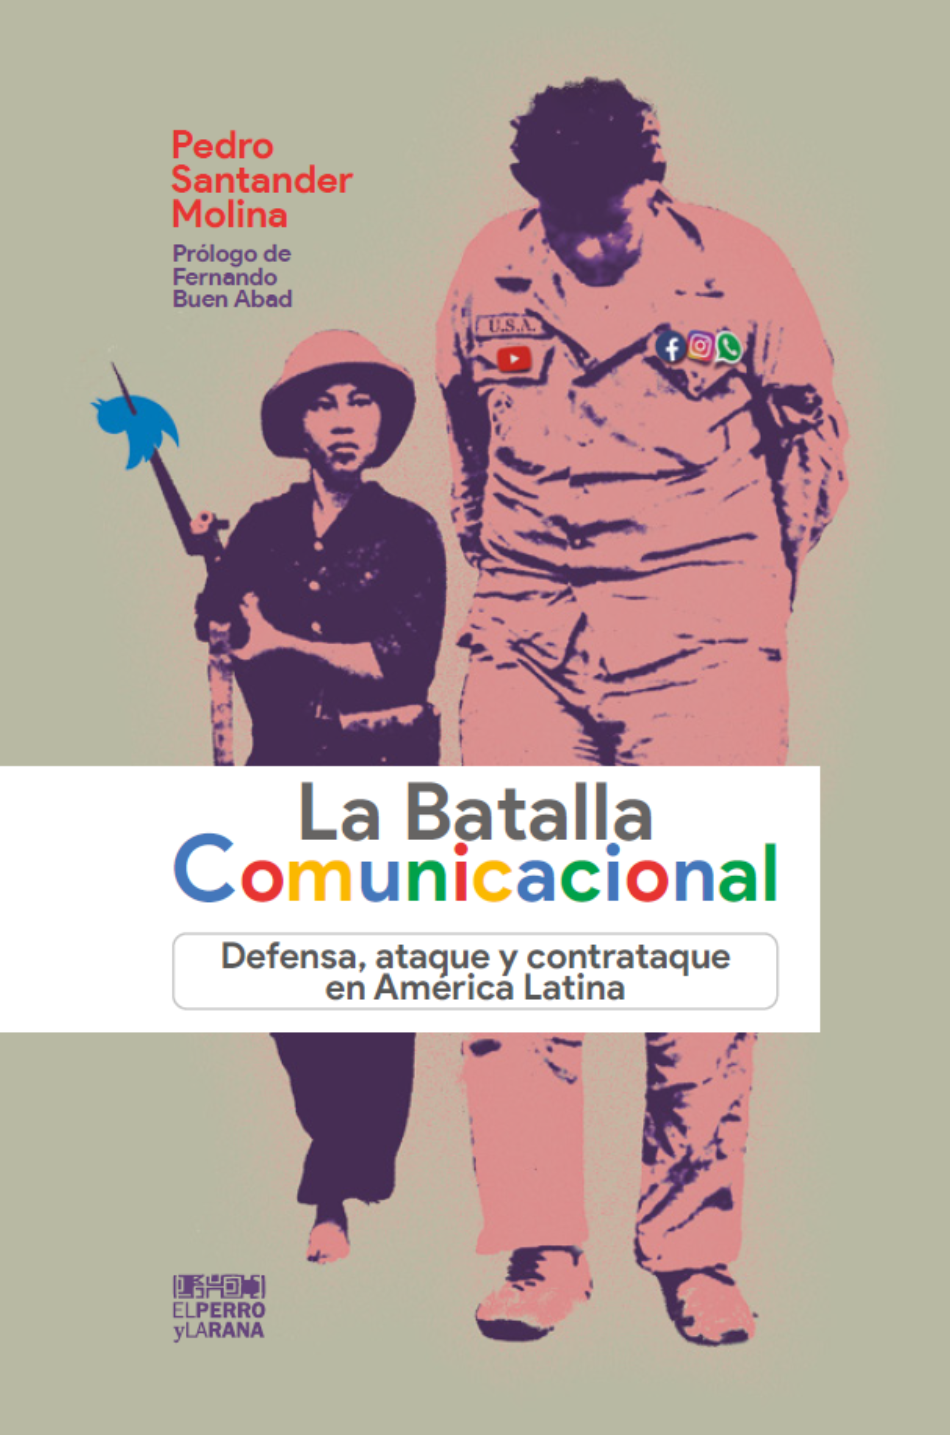 «La Batalla Comunicacional: Defensa, ataque y contrataque en América Latina», de Pedro Santander Molina, en descarga libre